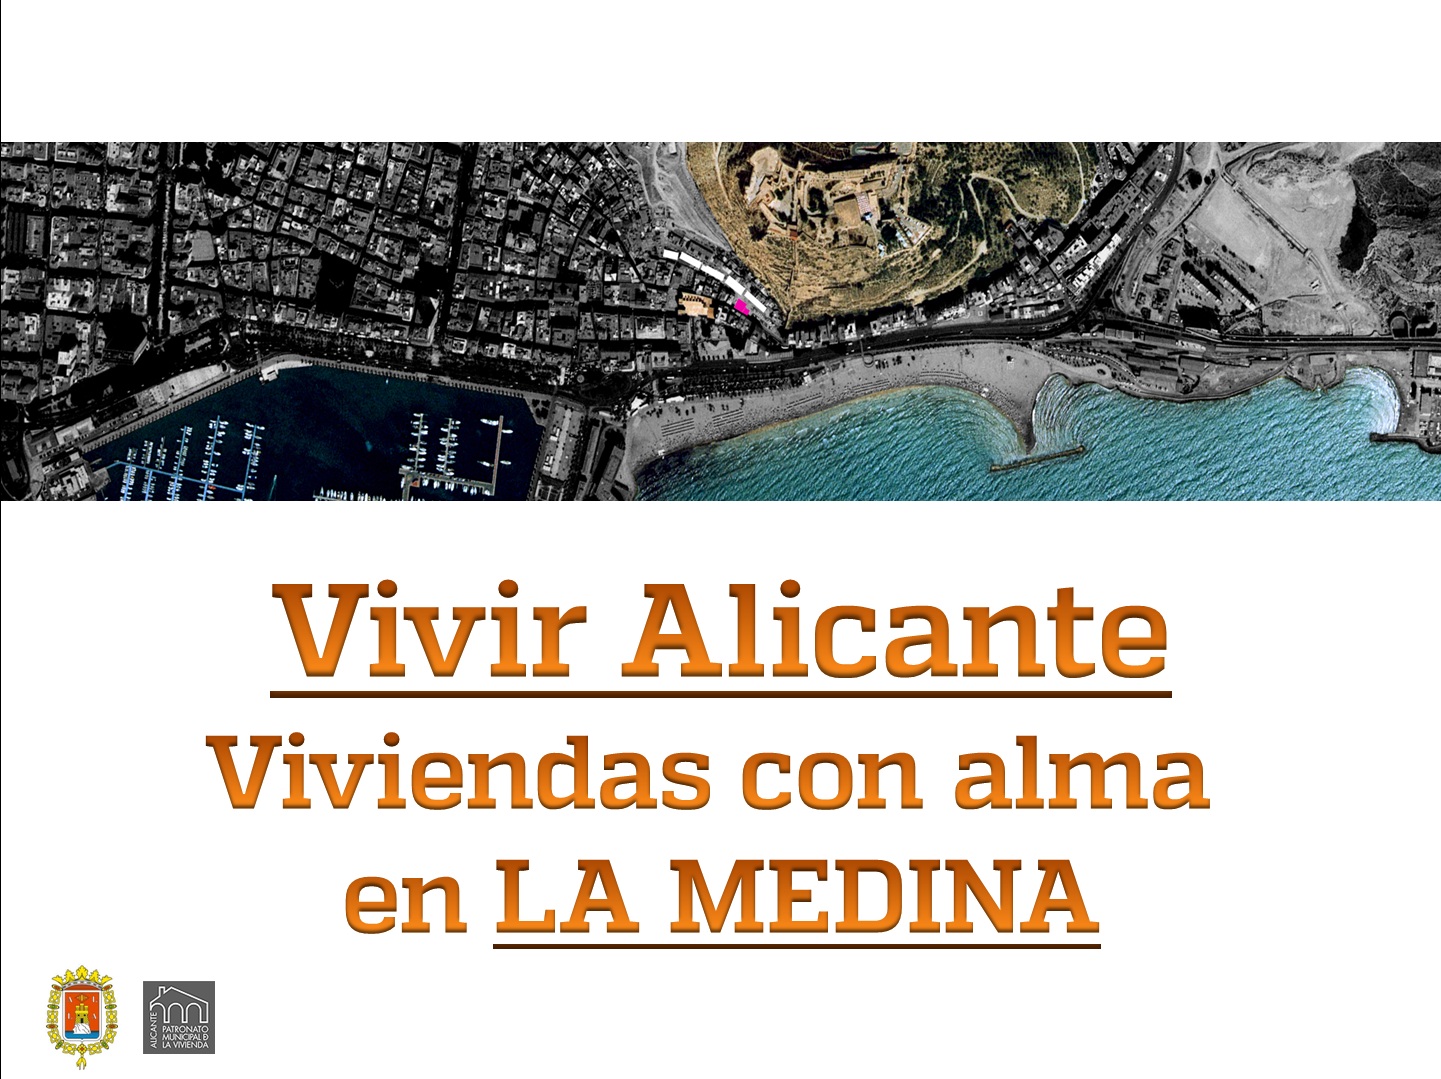 Vivir Alicante en La Medina